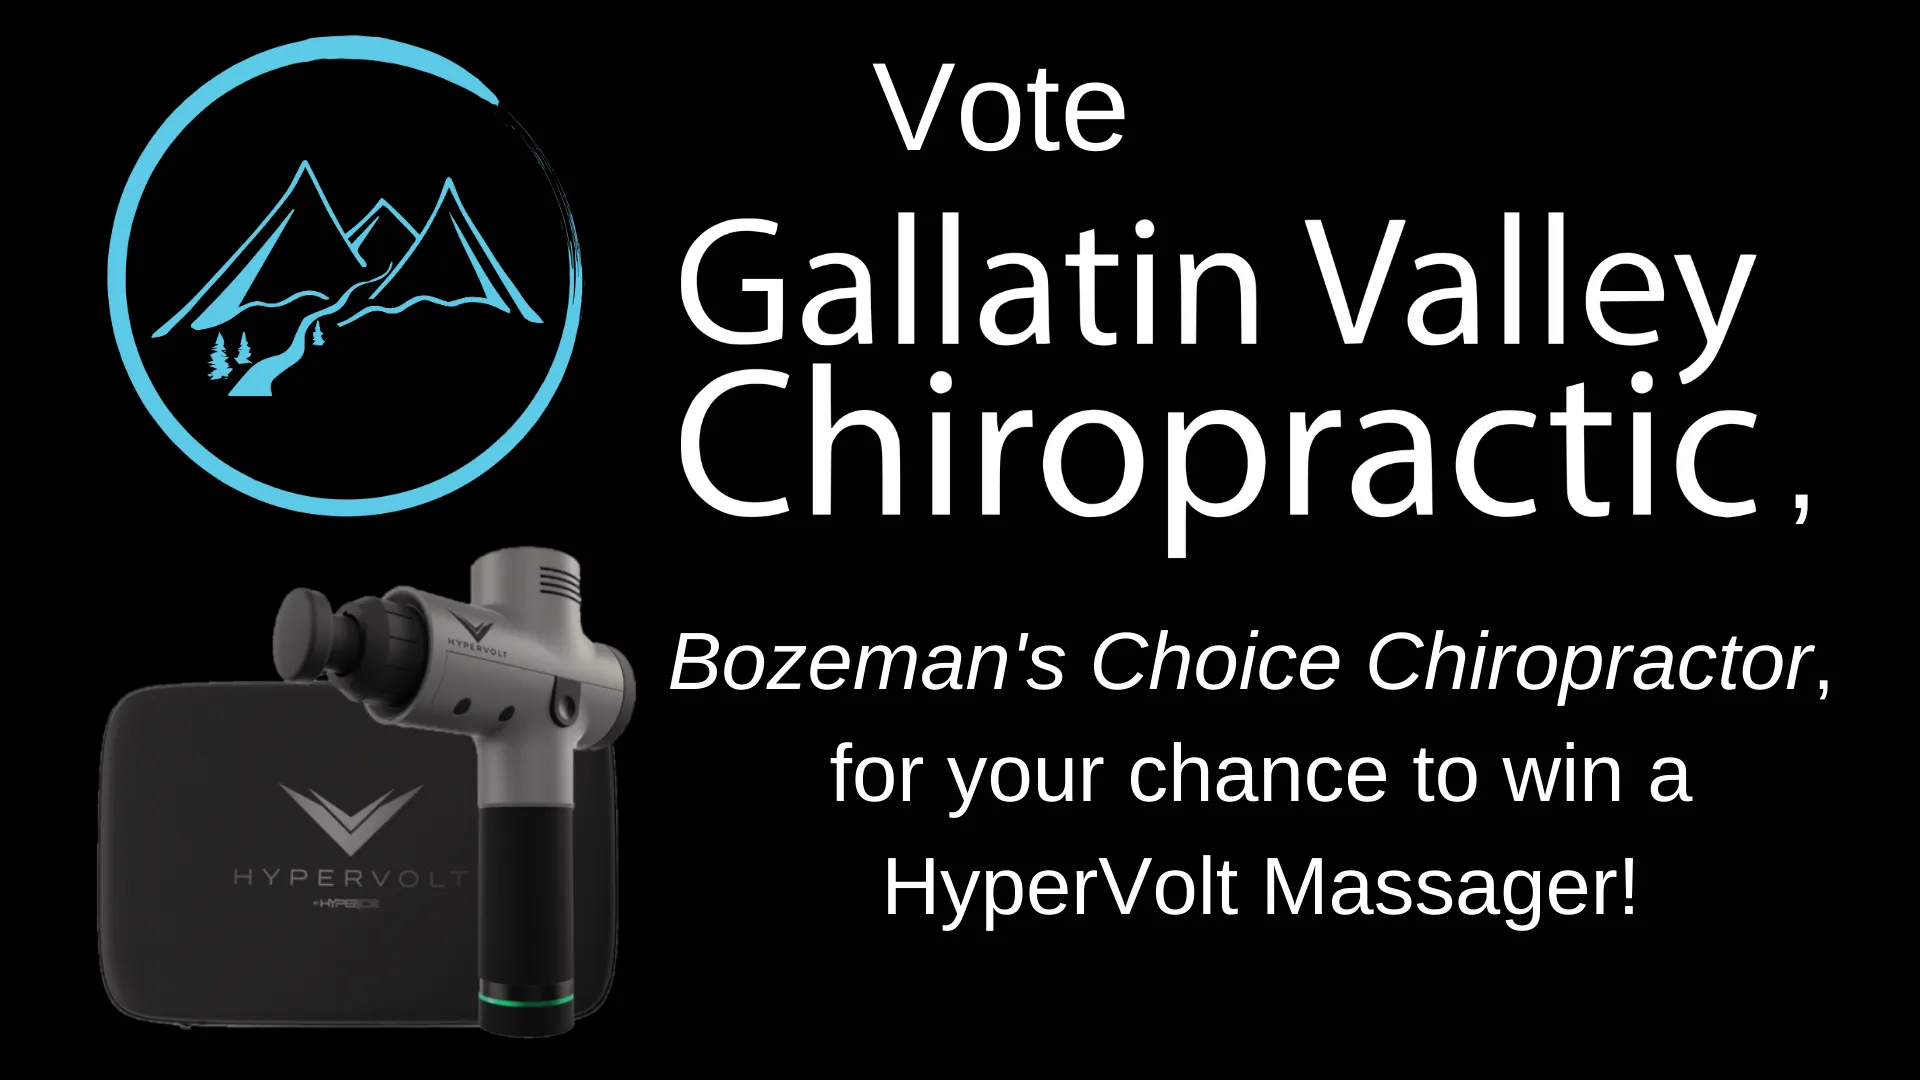 vote-gallatin-valley-chiropractic-bozemans-choice